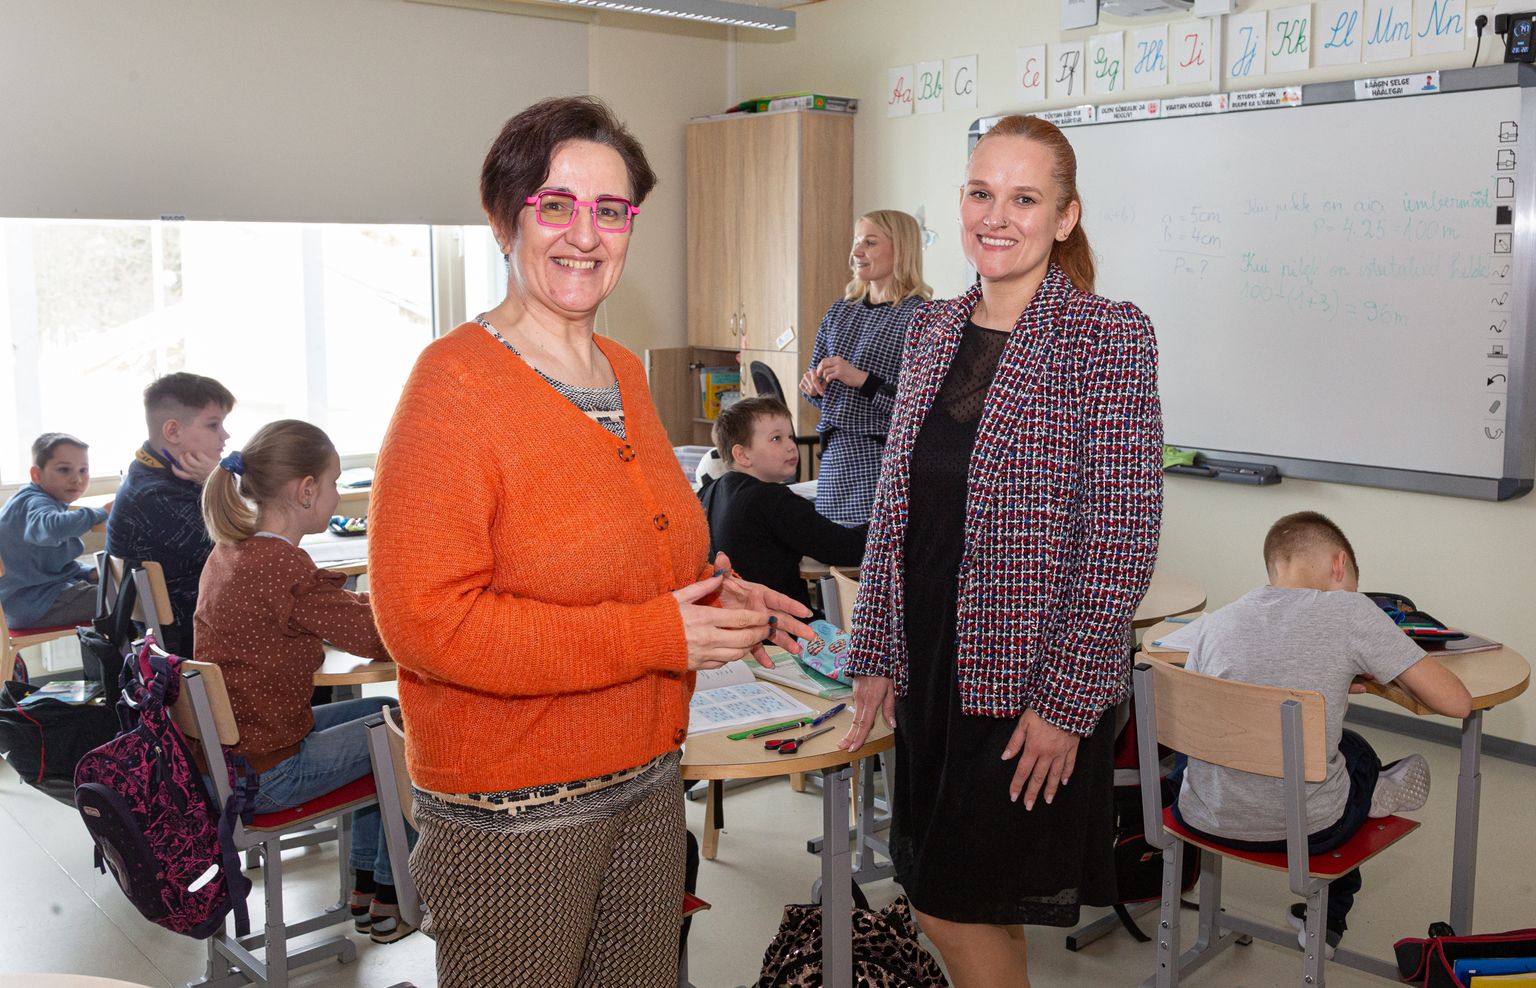 Kogenud õpetaja Kristiina Raidvere tutvus teiste seas Sinimäe põhikooliga. Direktor Aljona Kordontšuk kinnitas, et koolimaja uksed on huvilistele avatud.